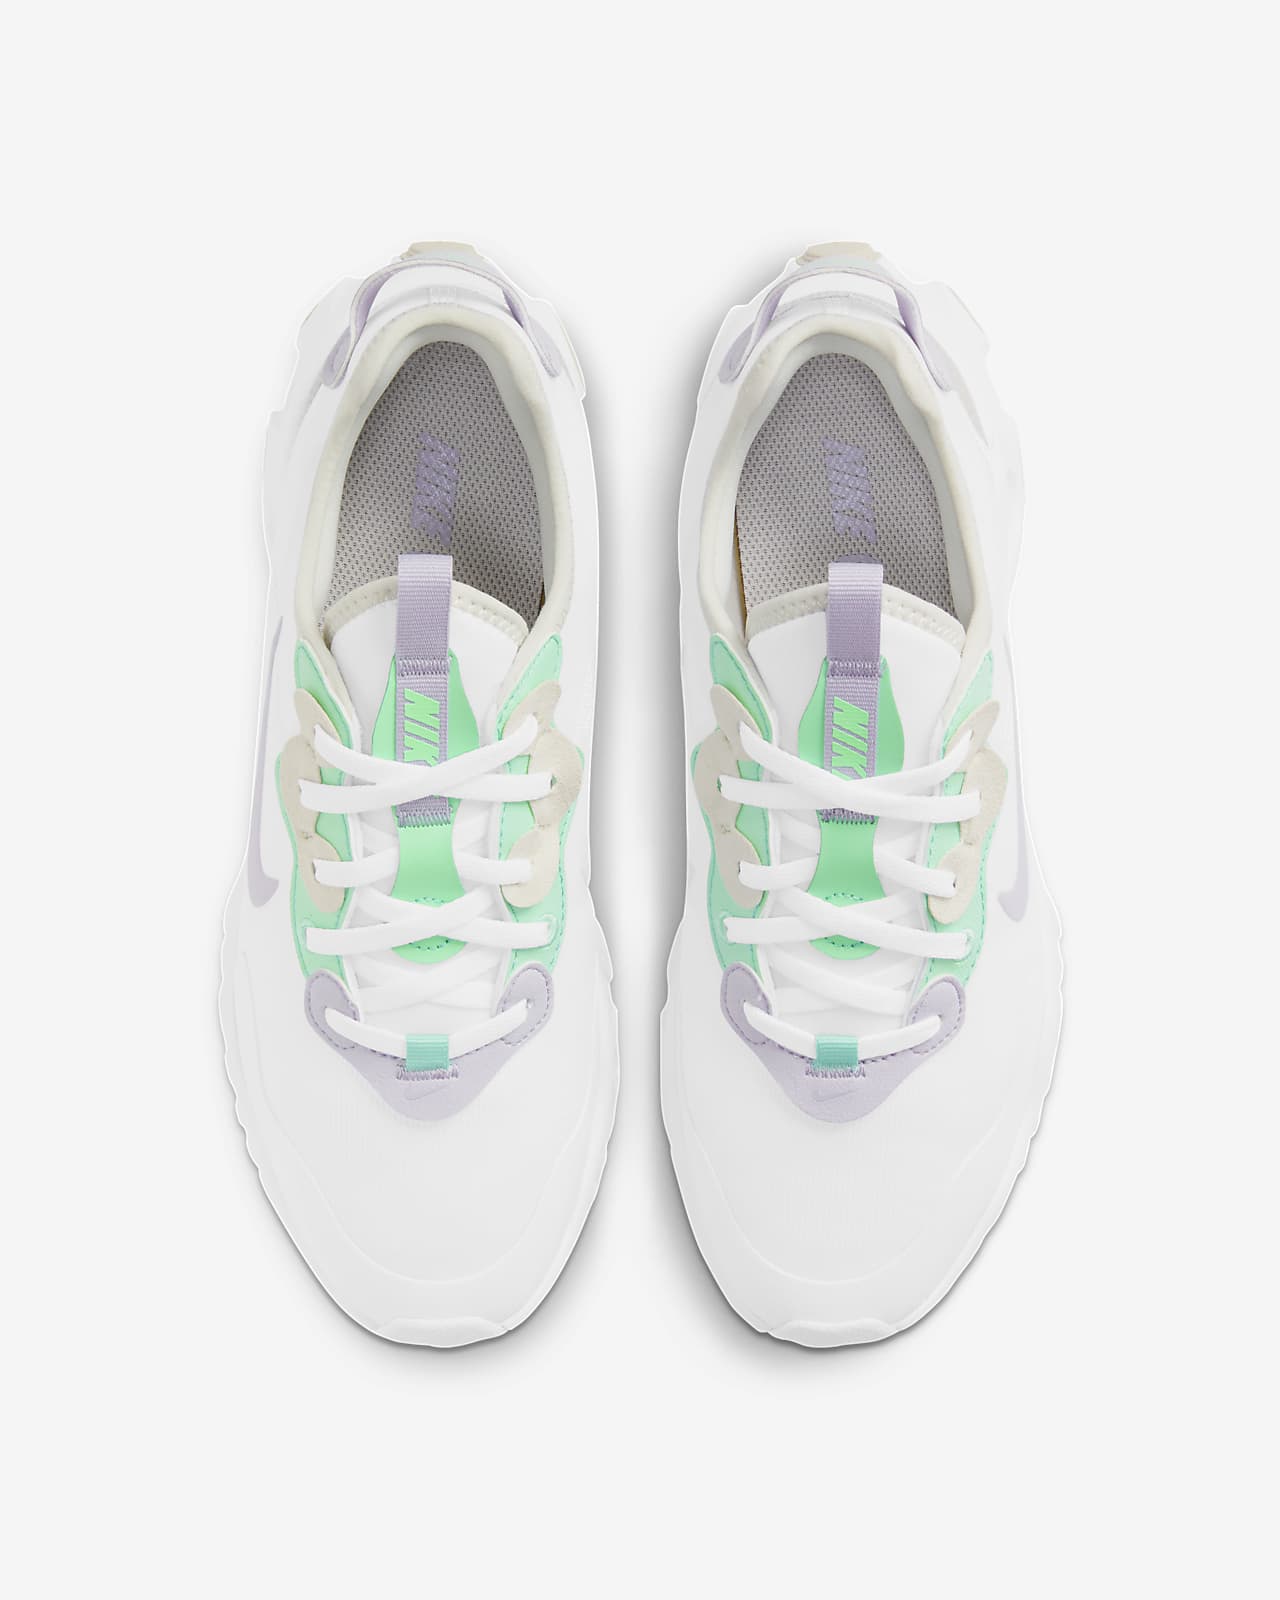 Nike React Art3mis Women's Shoe. Nike SA